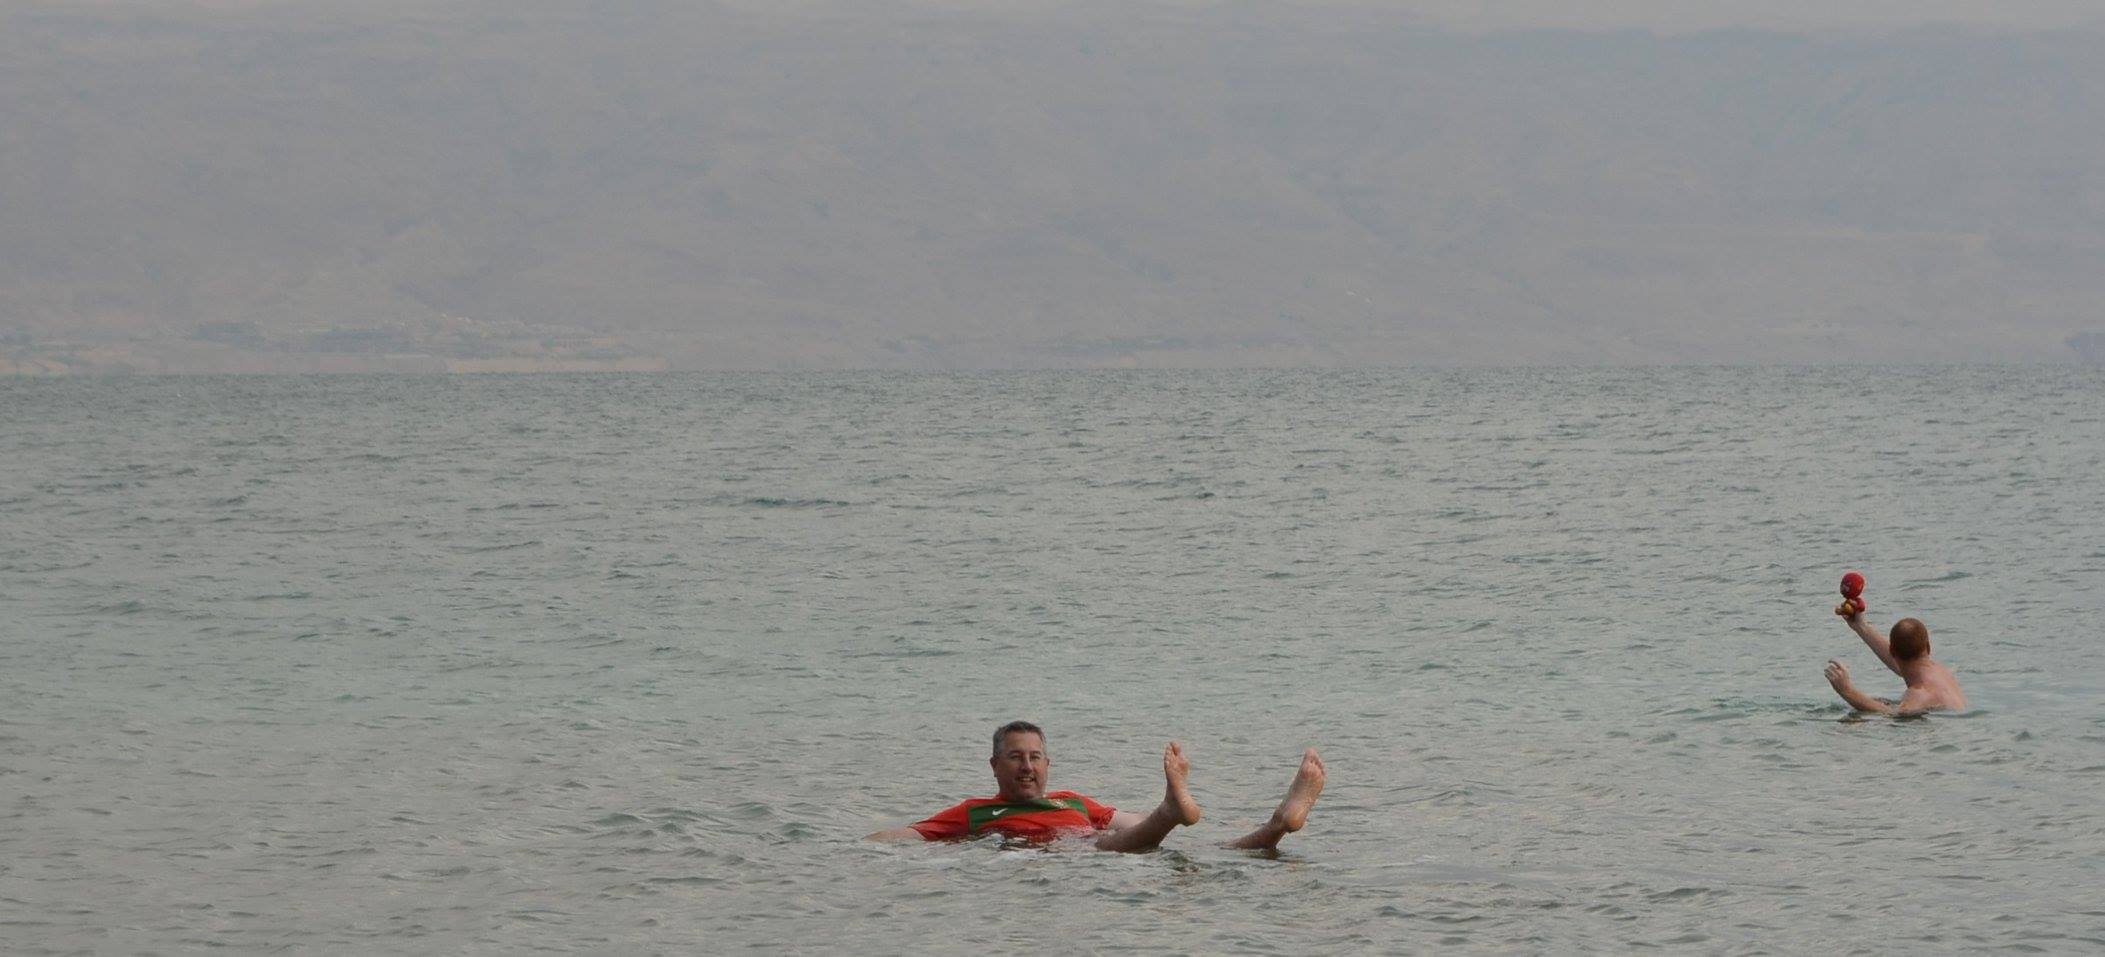 Swimming the dead sea